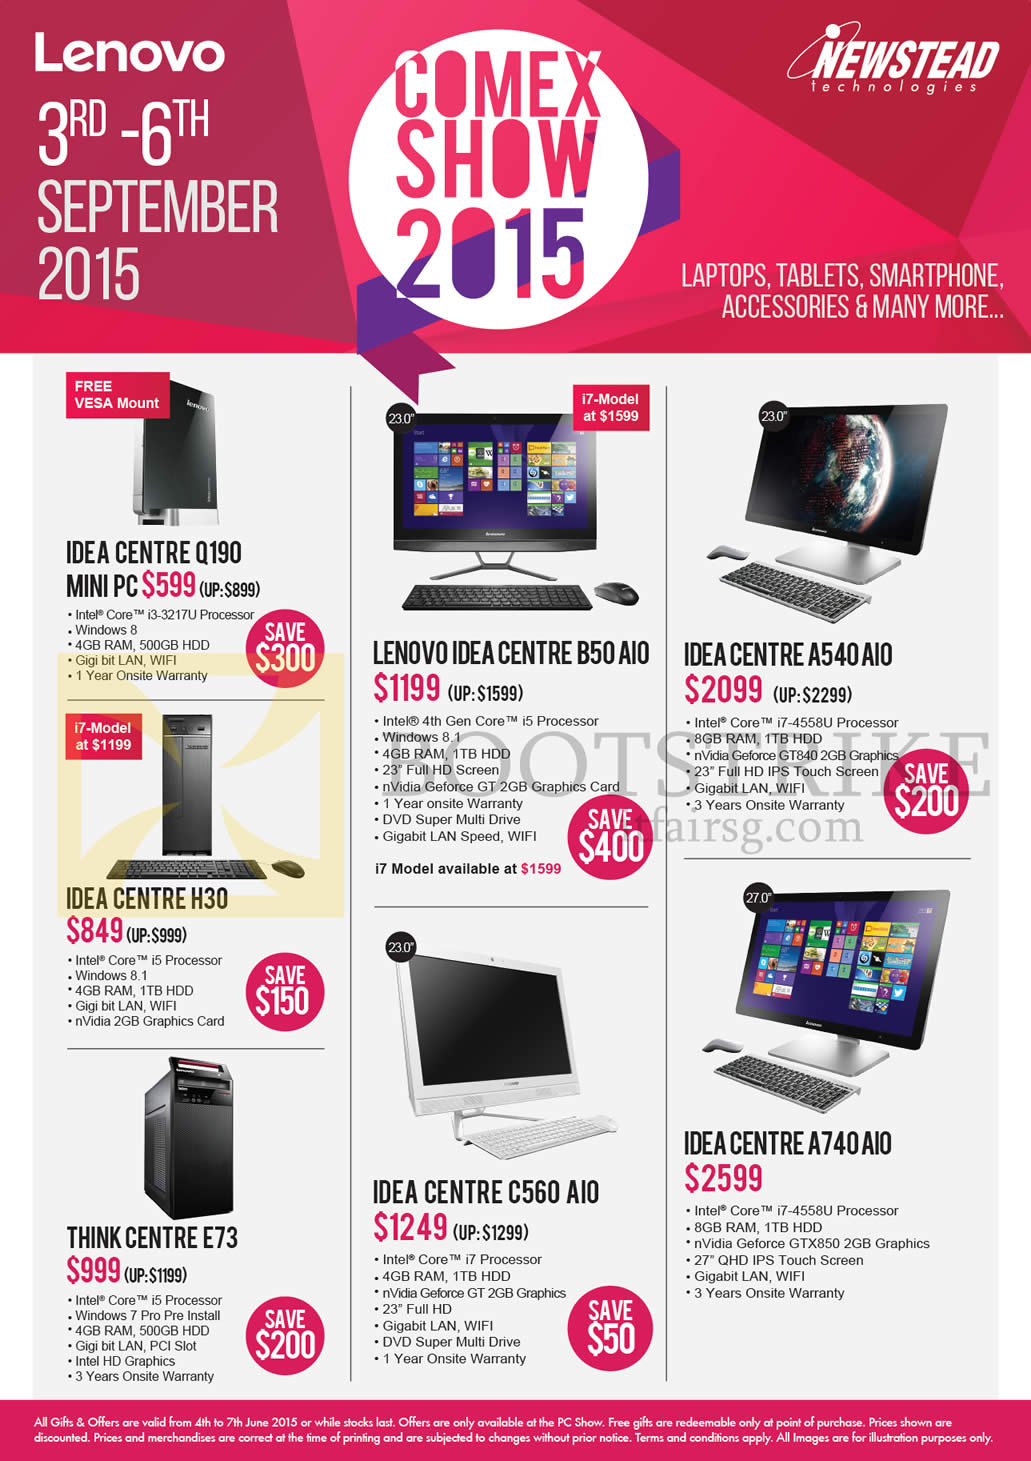 COMEX 2015 price list image brochure of Lenovo Newstead Desktop PCs IdeaCentre Q190 Mini PC, B50 AIO, H30, A540, A740, C560, ThinkCentre E73